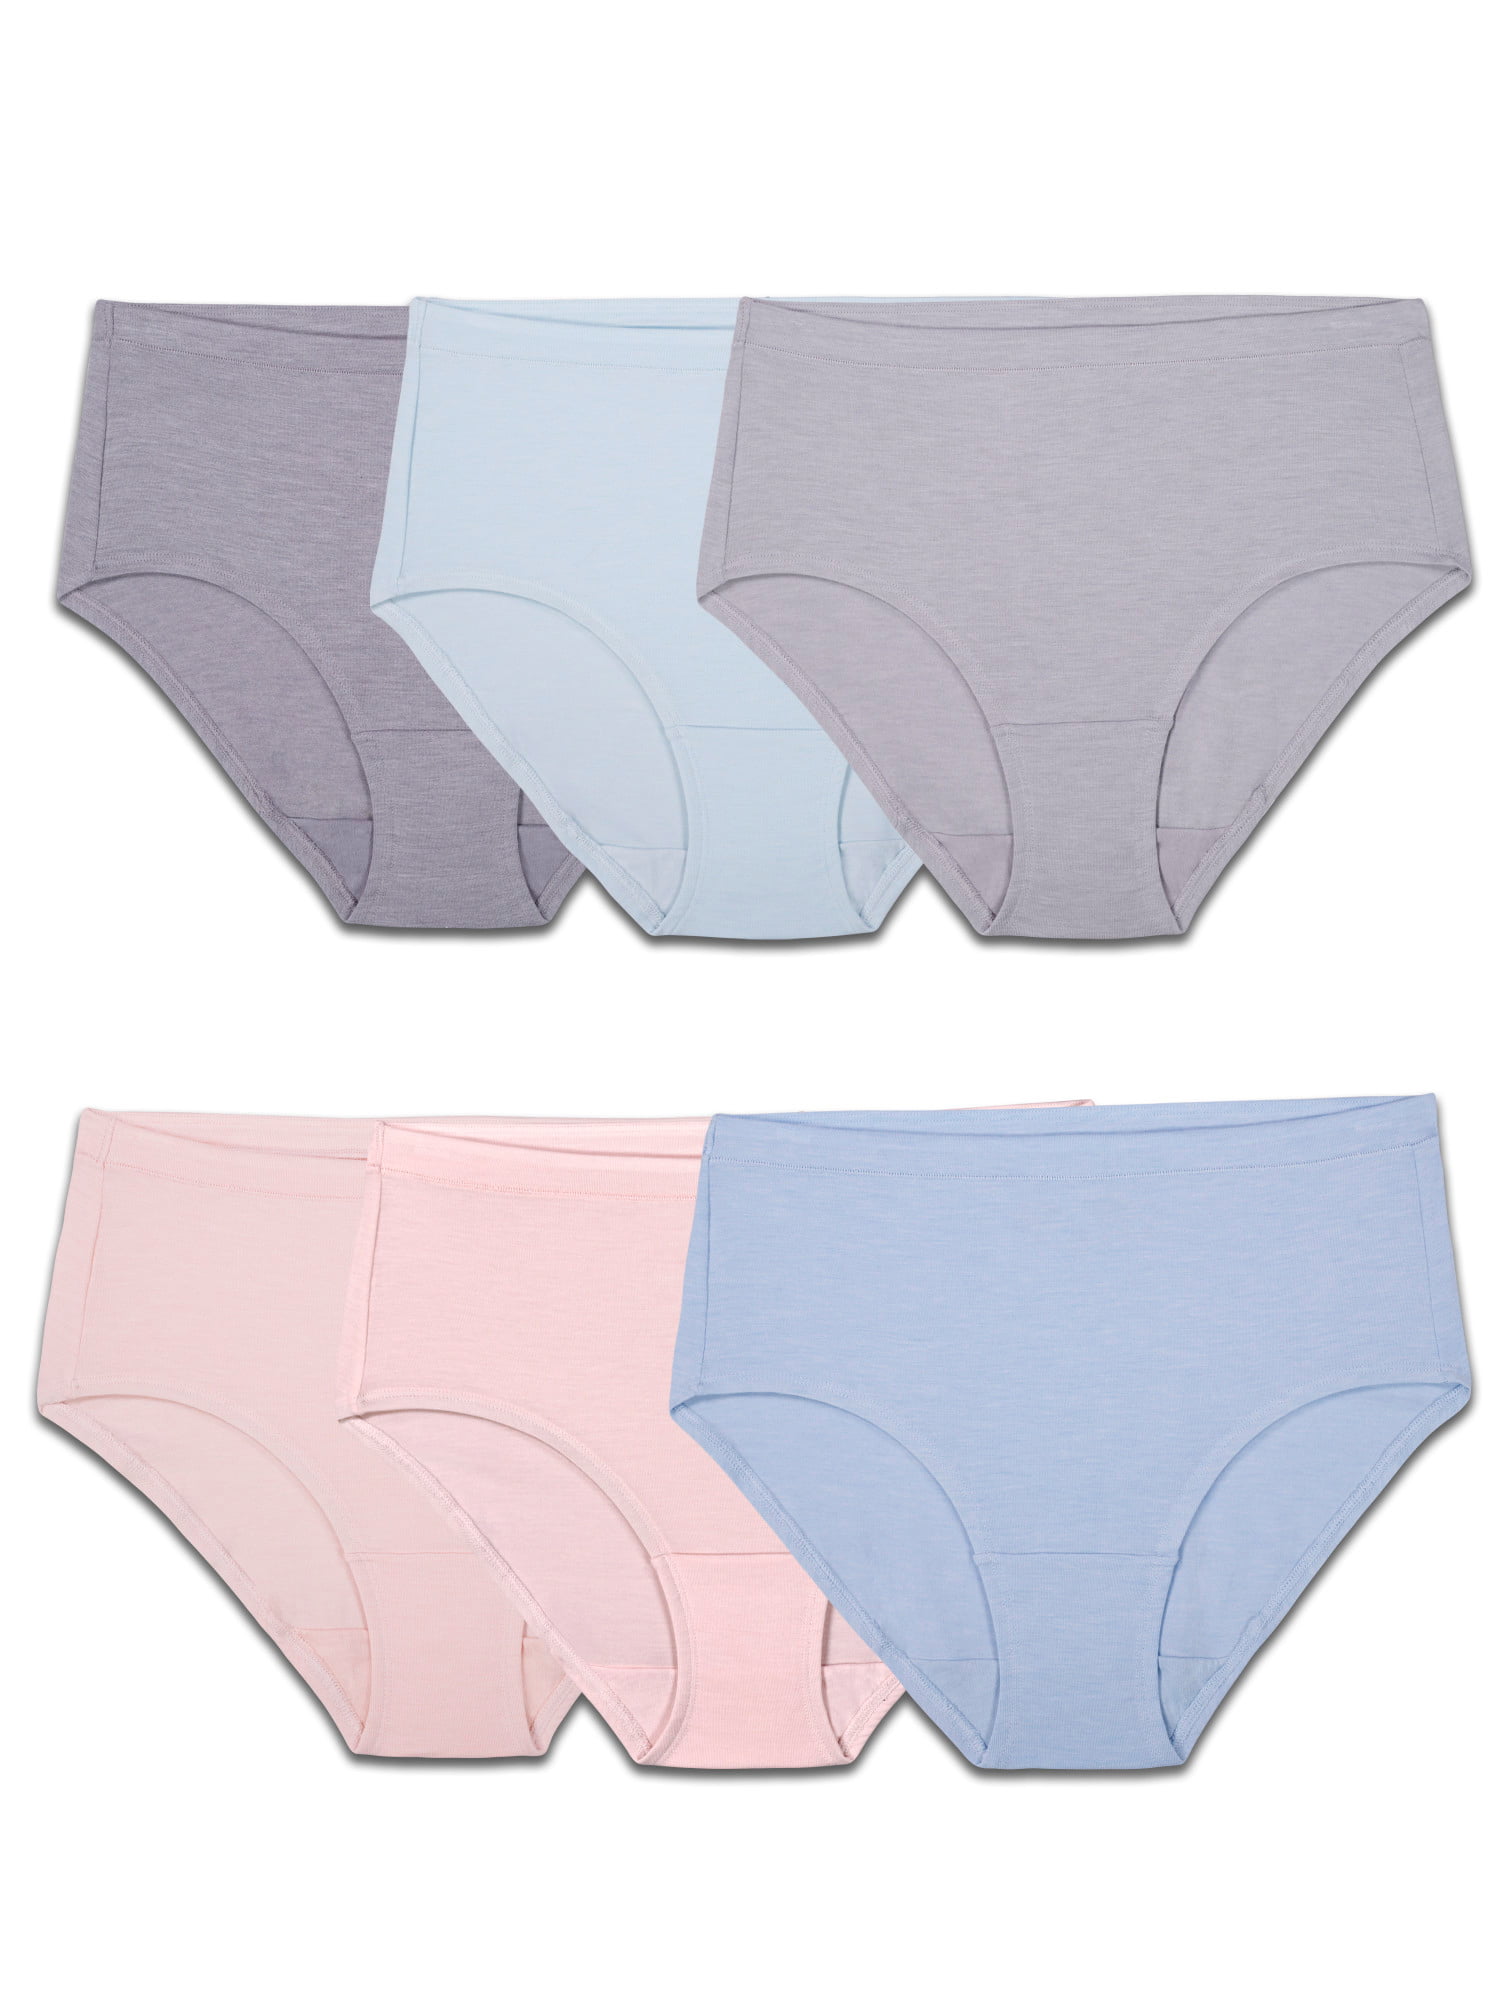 discount 62% White/Pink 1-3M KIDS FASHION Underwear & Nightwear NoName Body 